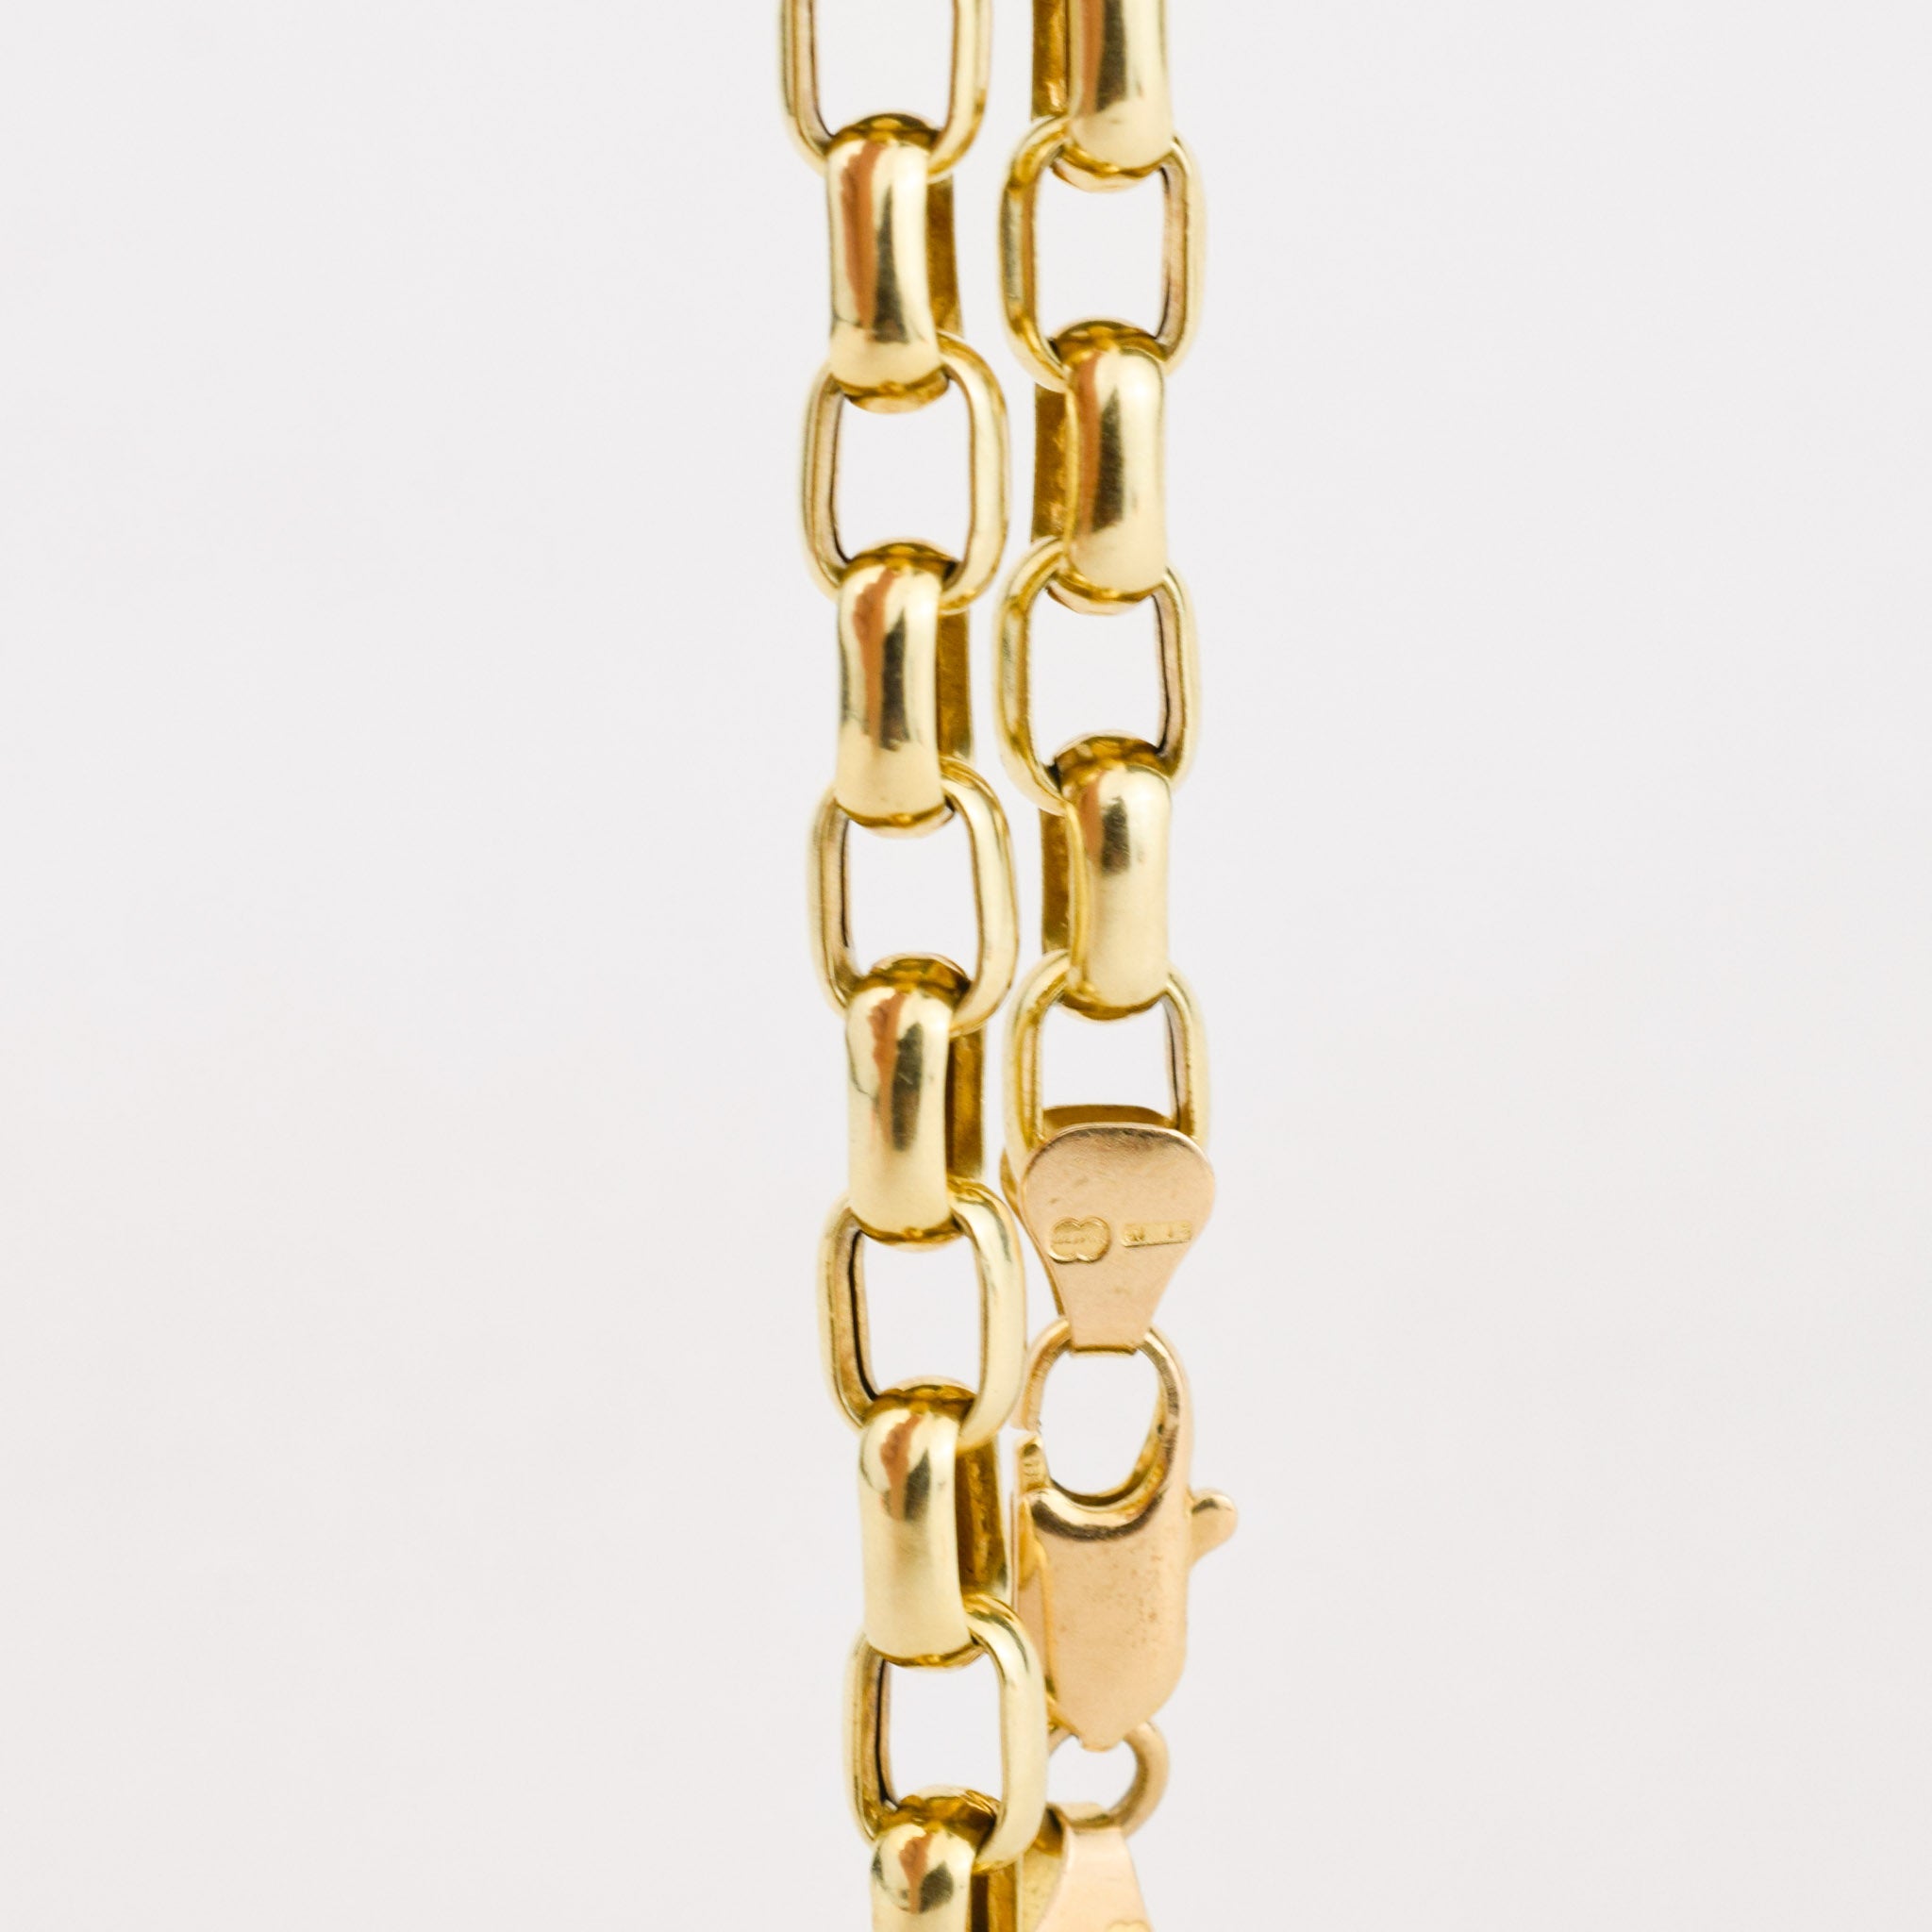 7" 14k gold Rectangular Rolo Bracelet